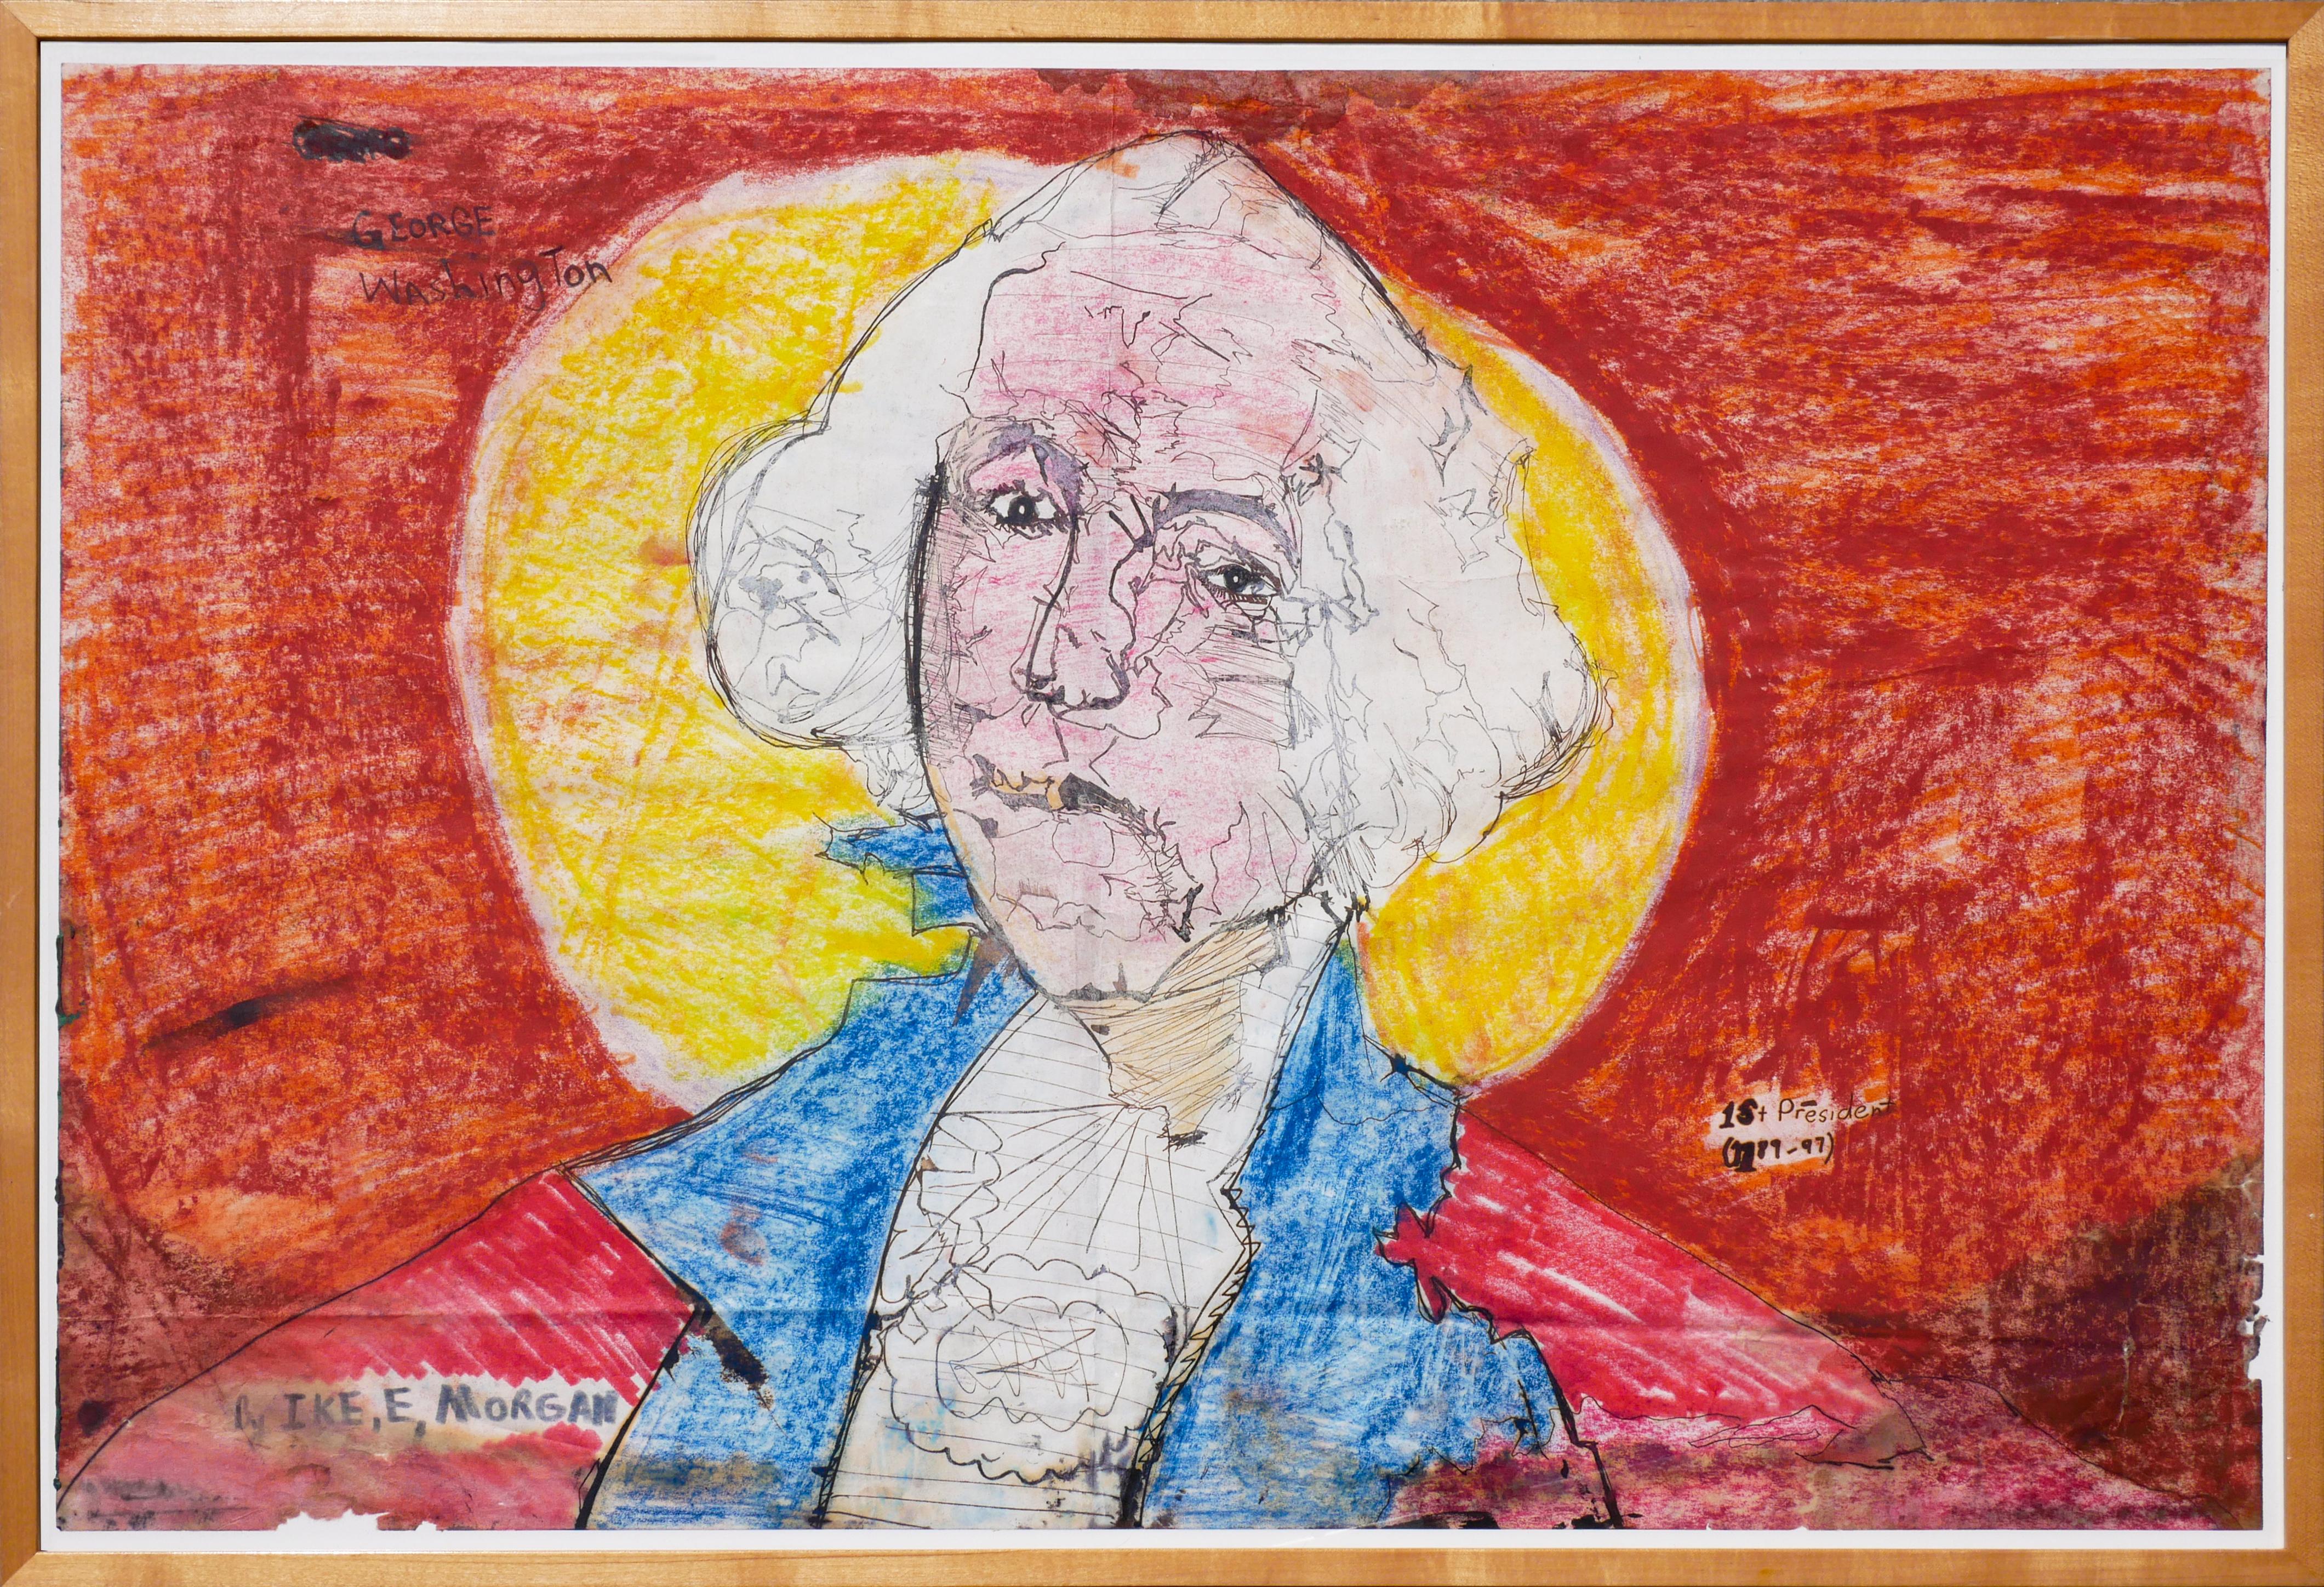 Portrait abstrait sans titre de George Washington orange, bleu et jaune - Art de Ike E. Morgan